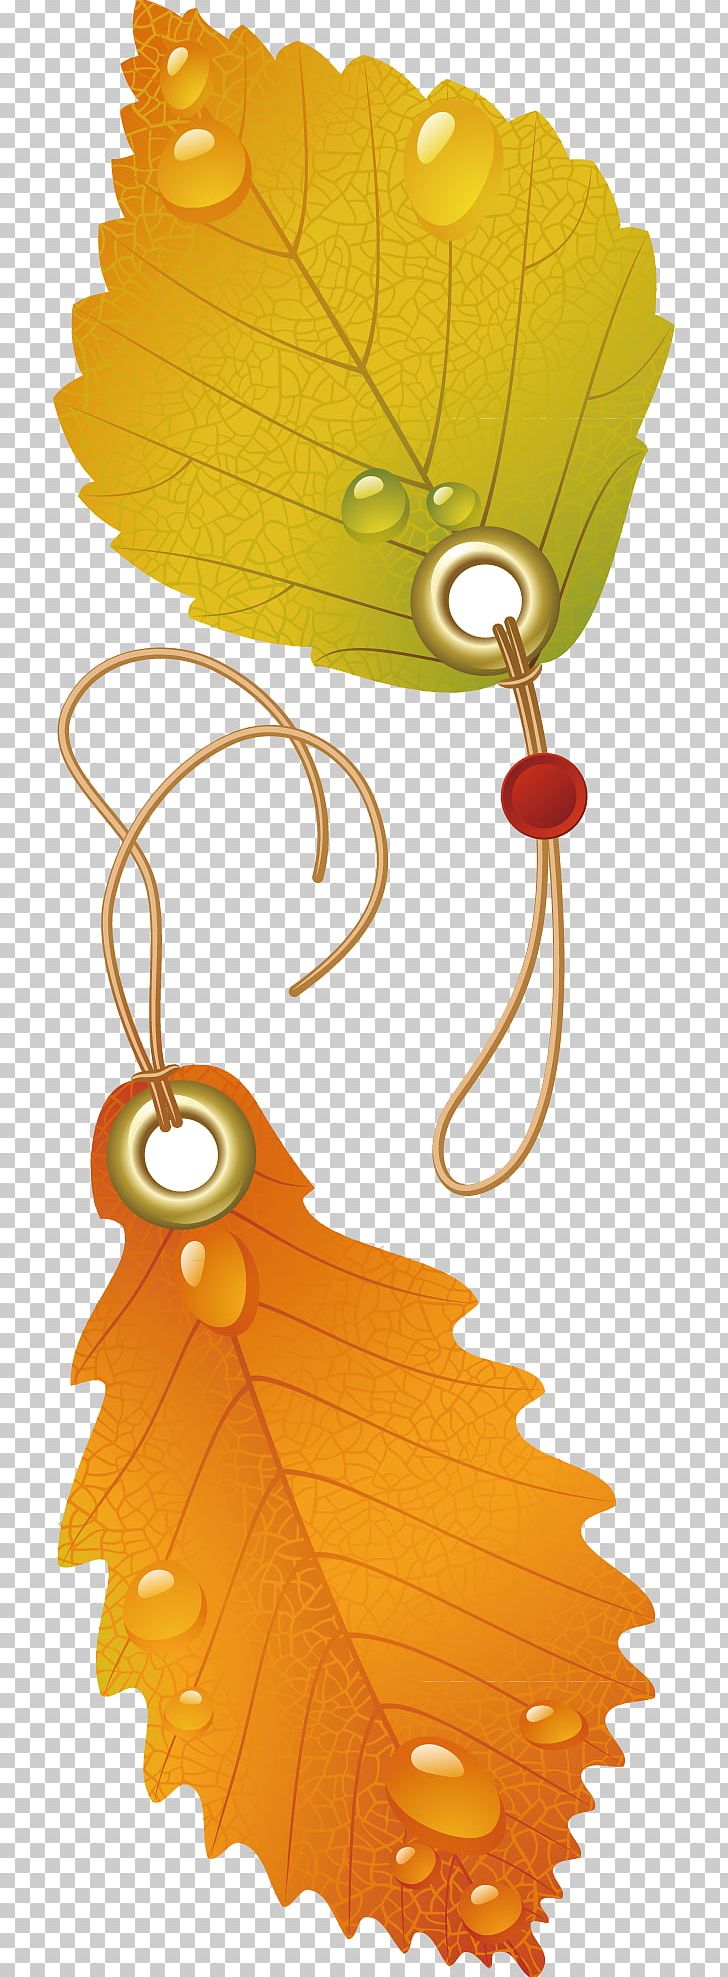 Japanese Maple Autumn Leaf Color PNG, Clipart, Art, Autumn, Christmas Decoration, Deciduous, Decorative Free PNG Download